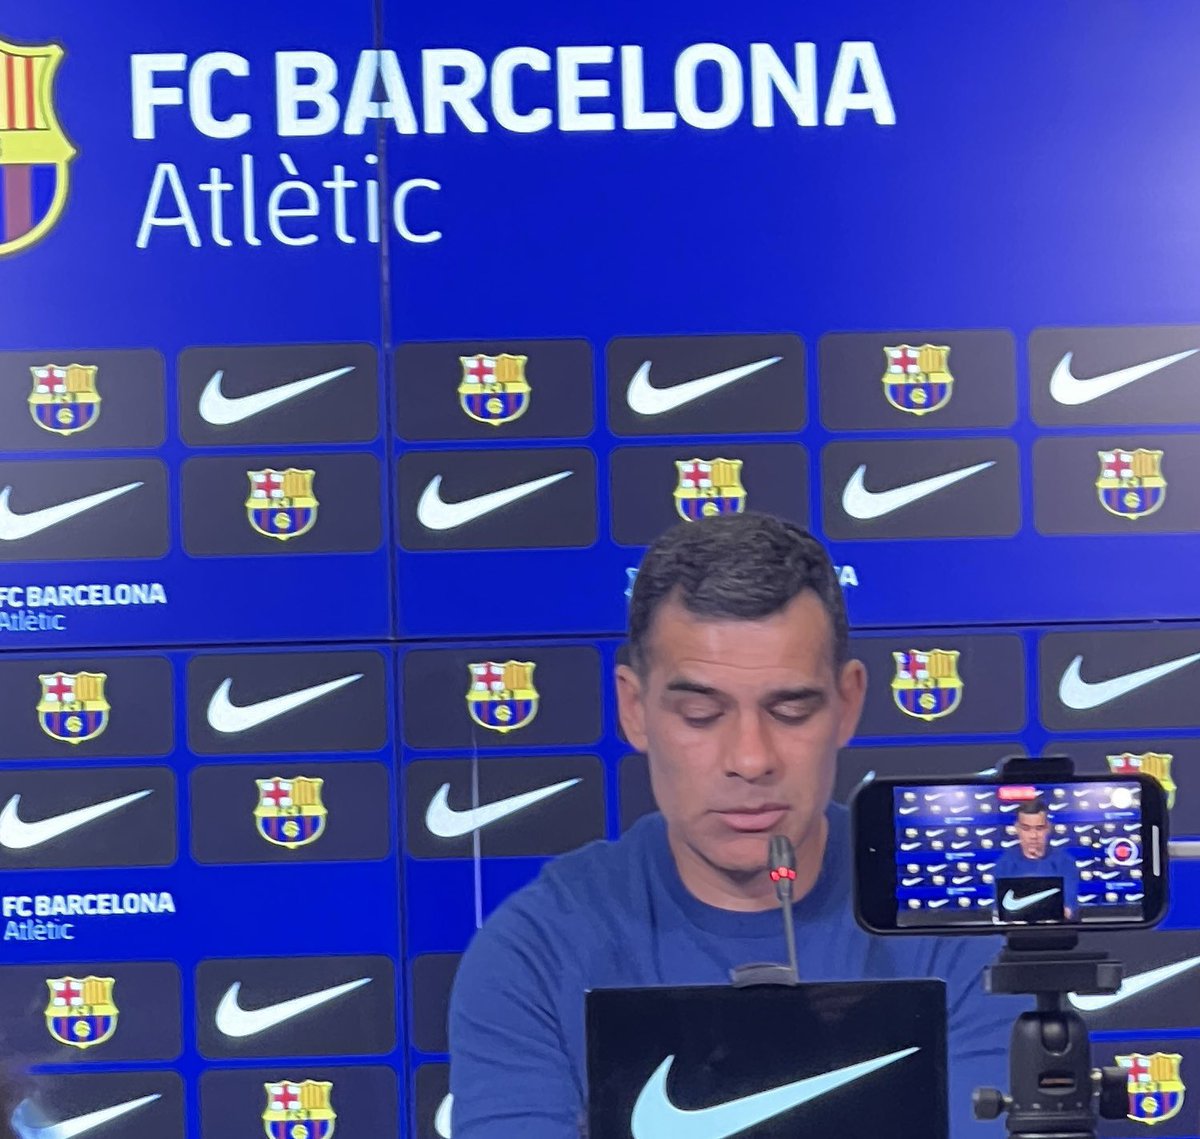 ماركيز:

لا اعرف أي شيء لا يتعلق ببرشلونة أتلتيك. أريد أن أقوم بأفضل ما يمكن مع الفريق الرديف

أنا أعزل نفسي قليلاً عما يحدث